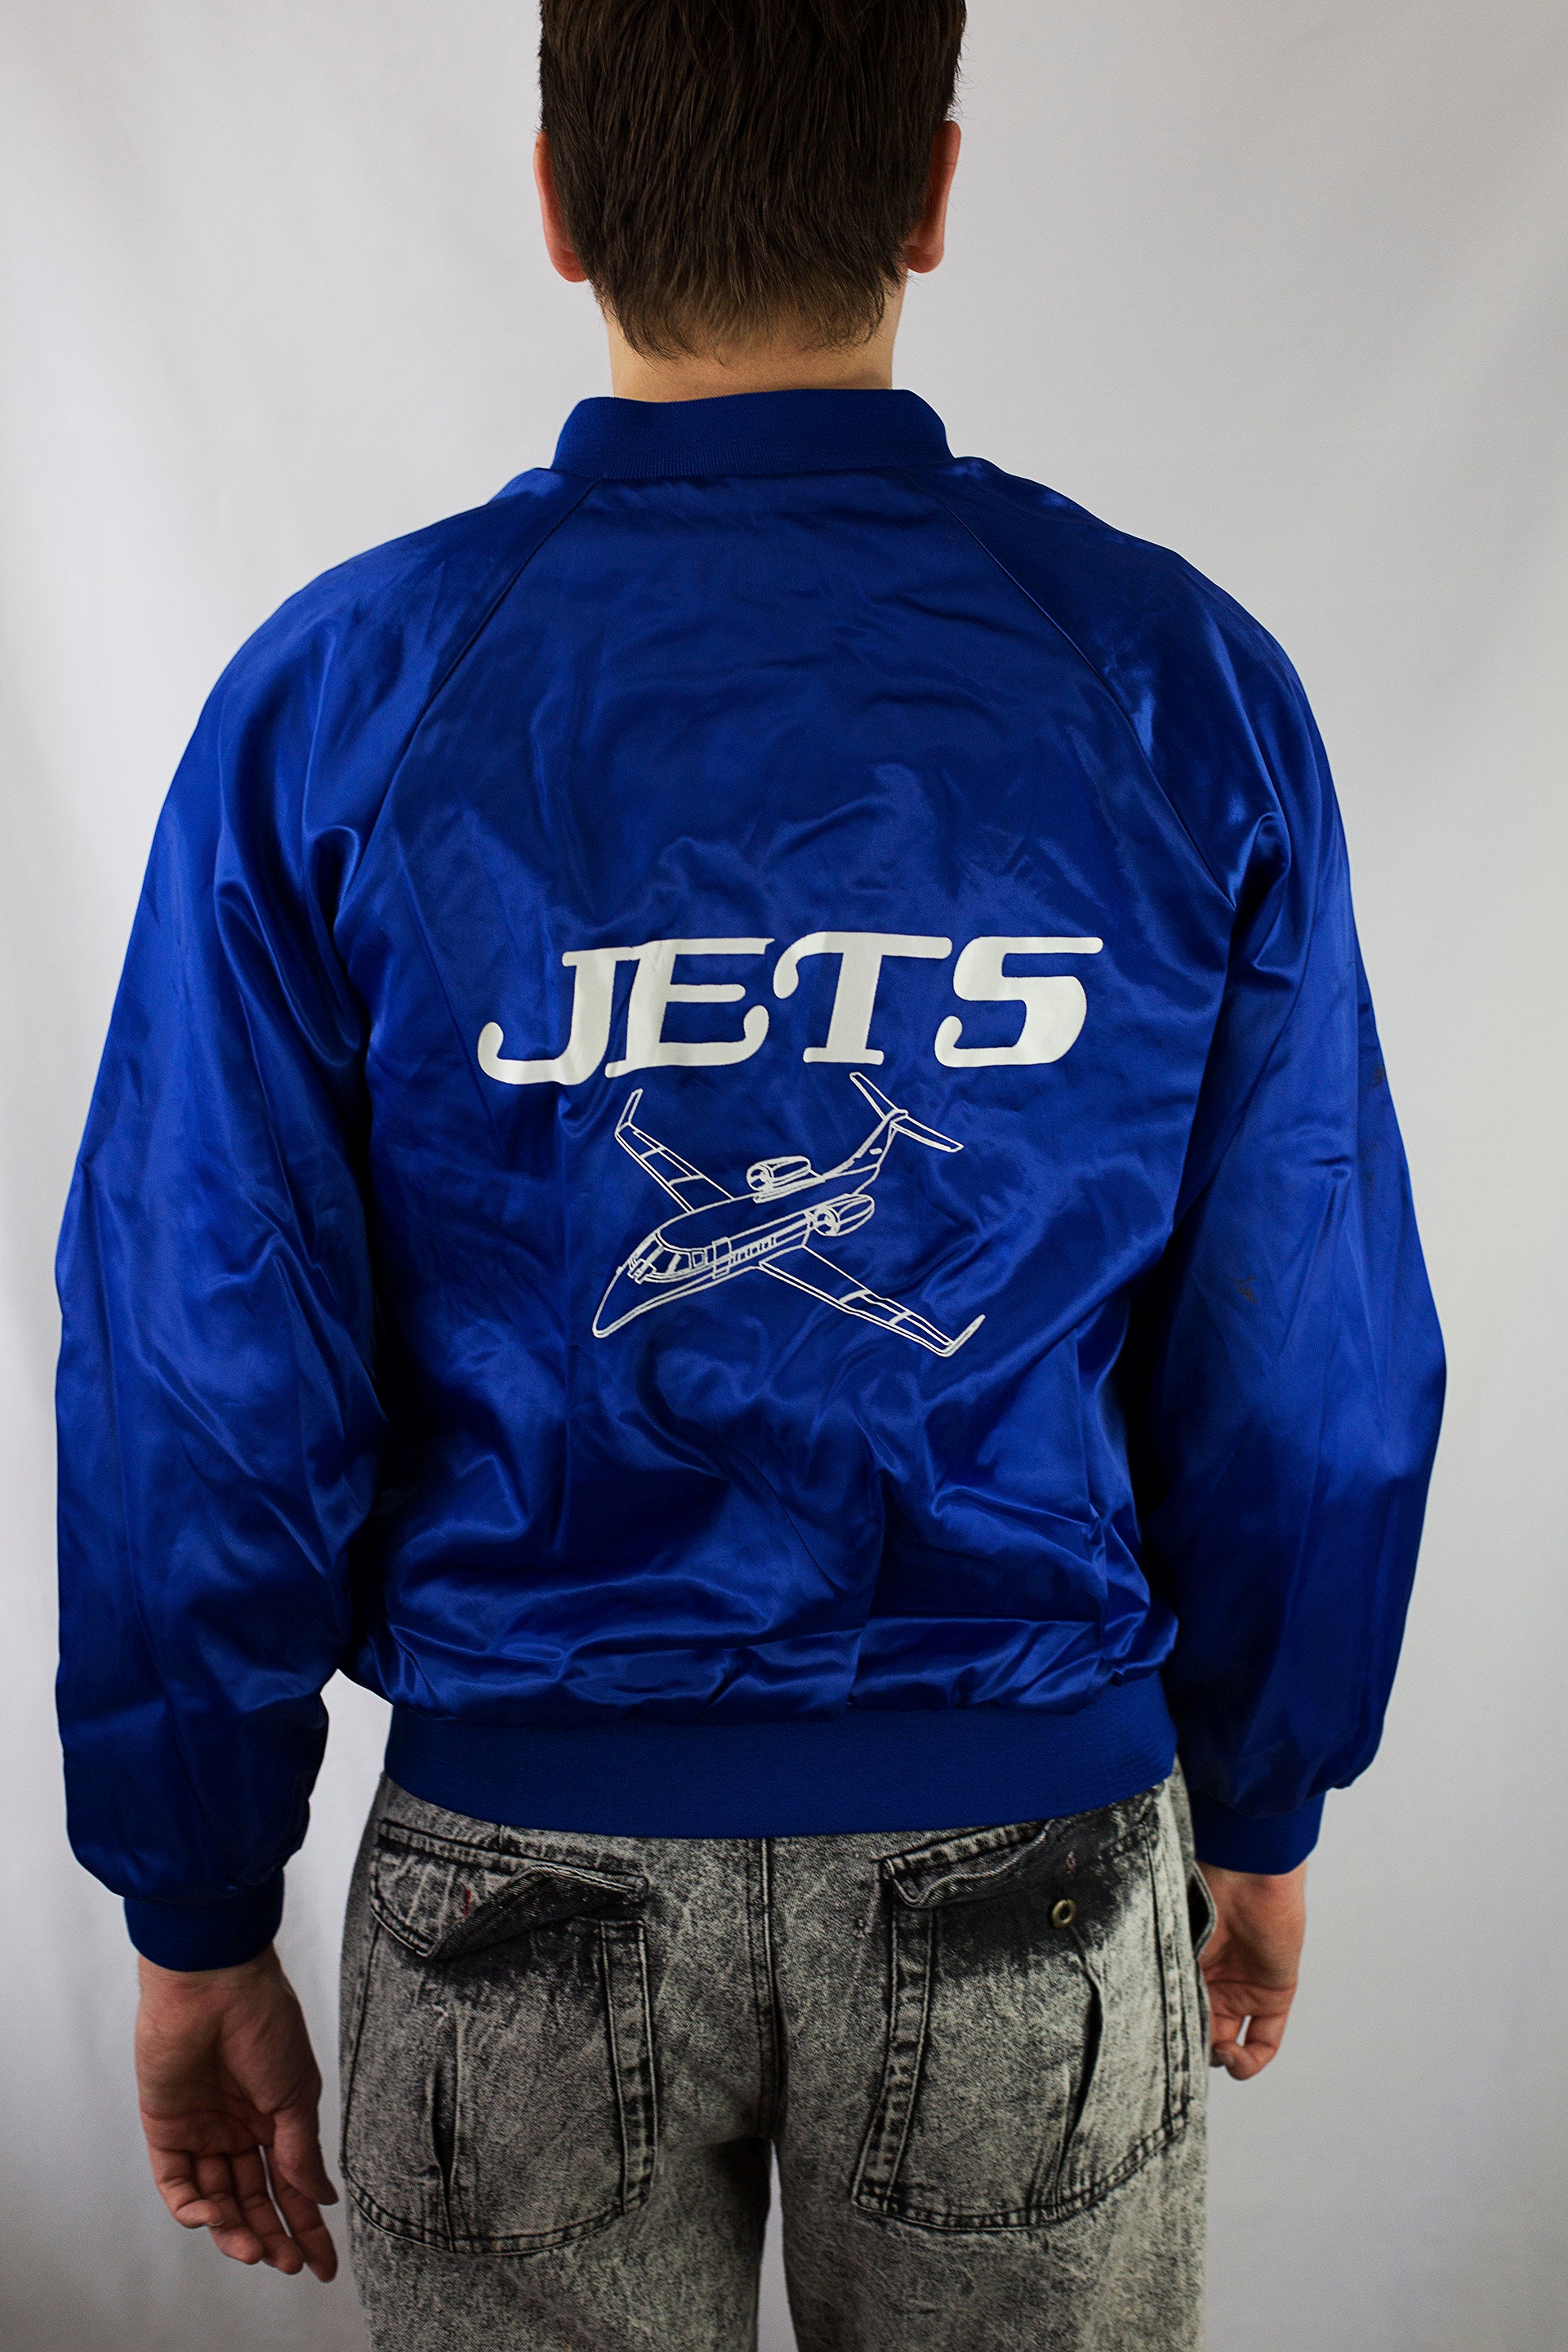 Winnipeg Jets Jackets, Jets Track Jackets, Winnipeg Jets Varsity Jackets,  Zip Jackets, Coats